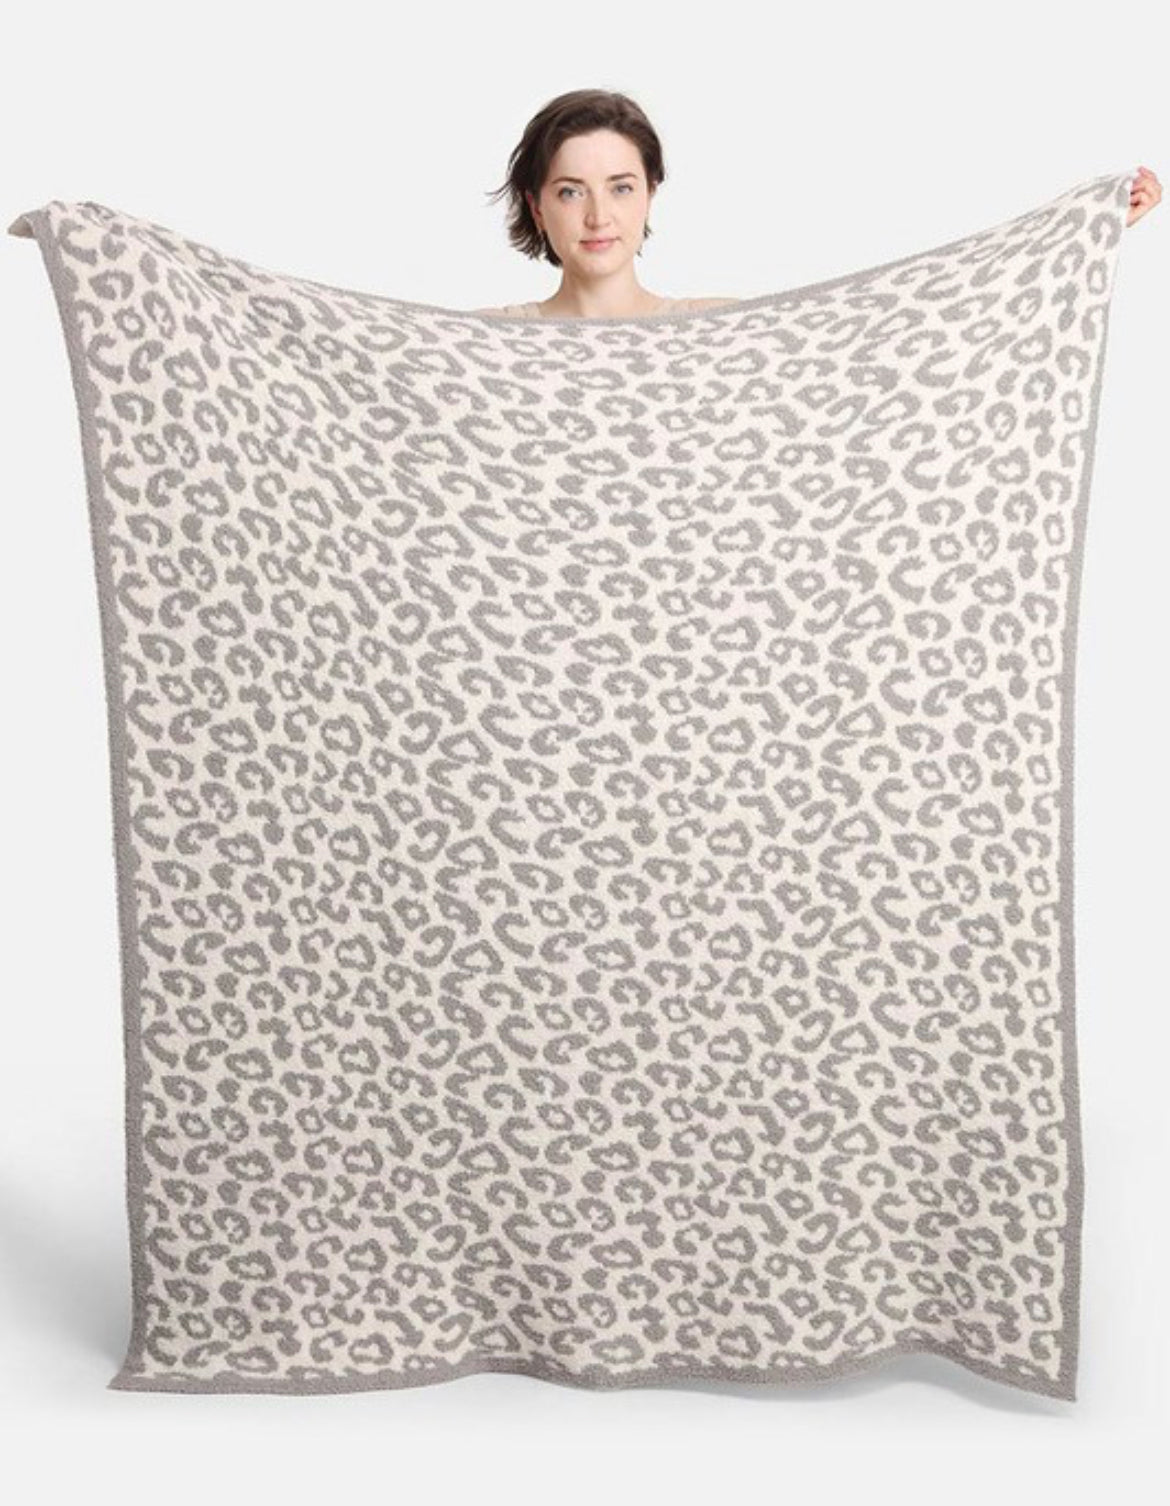 Sweet Dreams Leopard Blanket